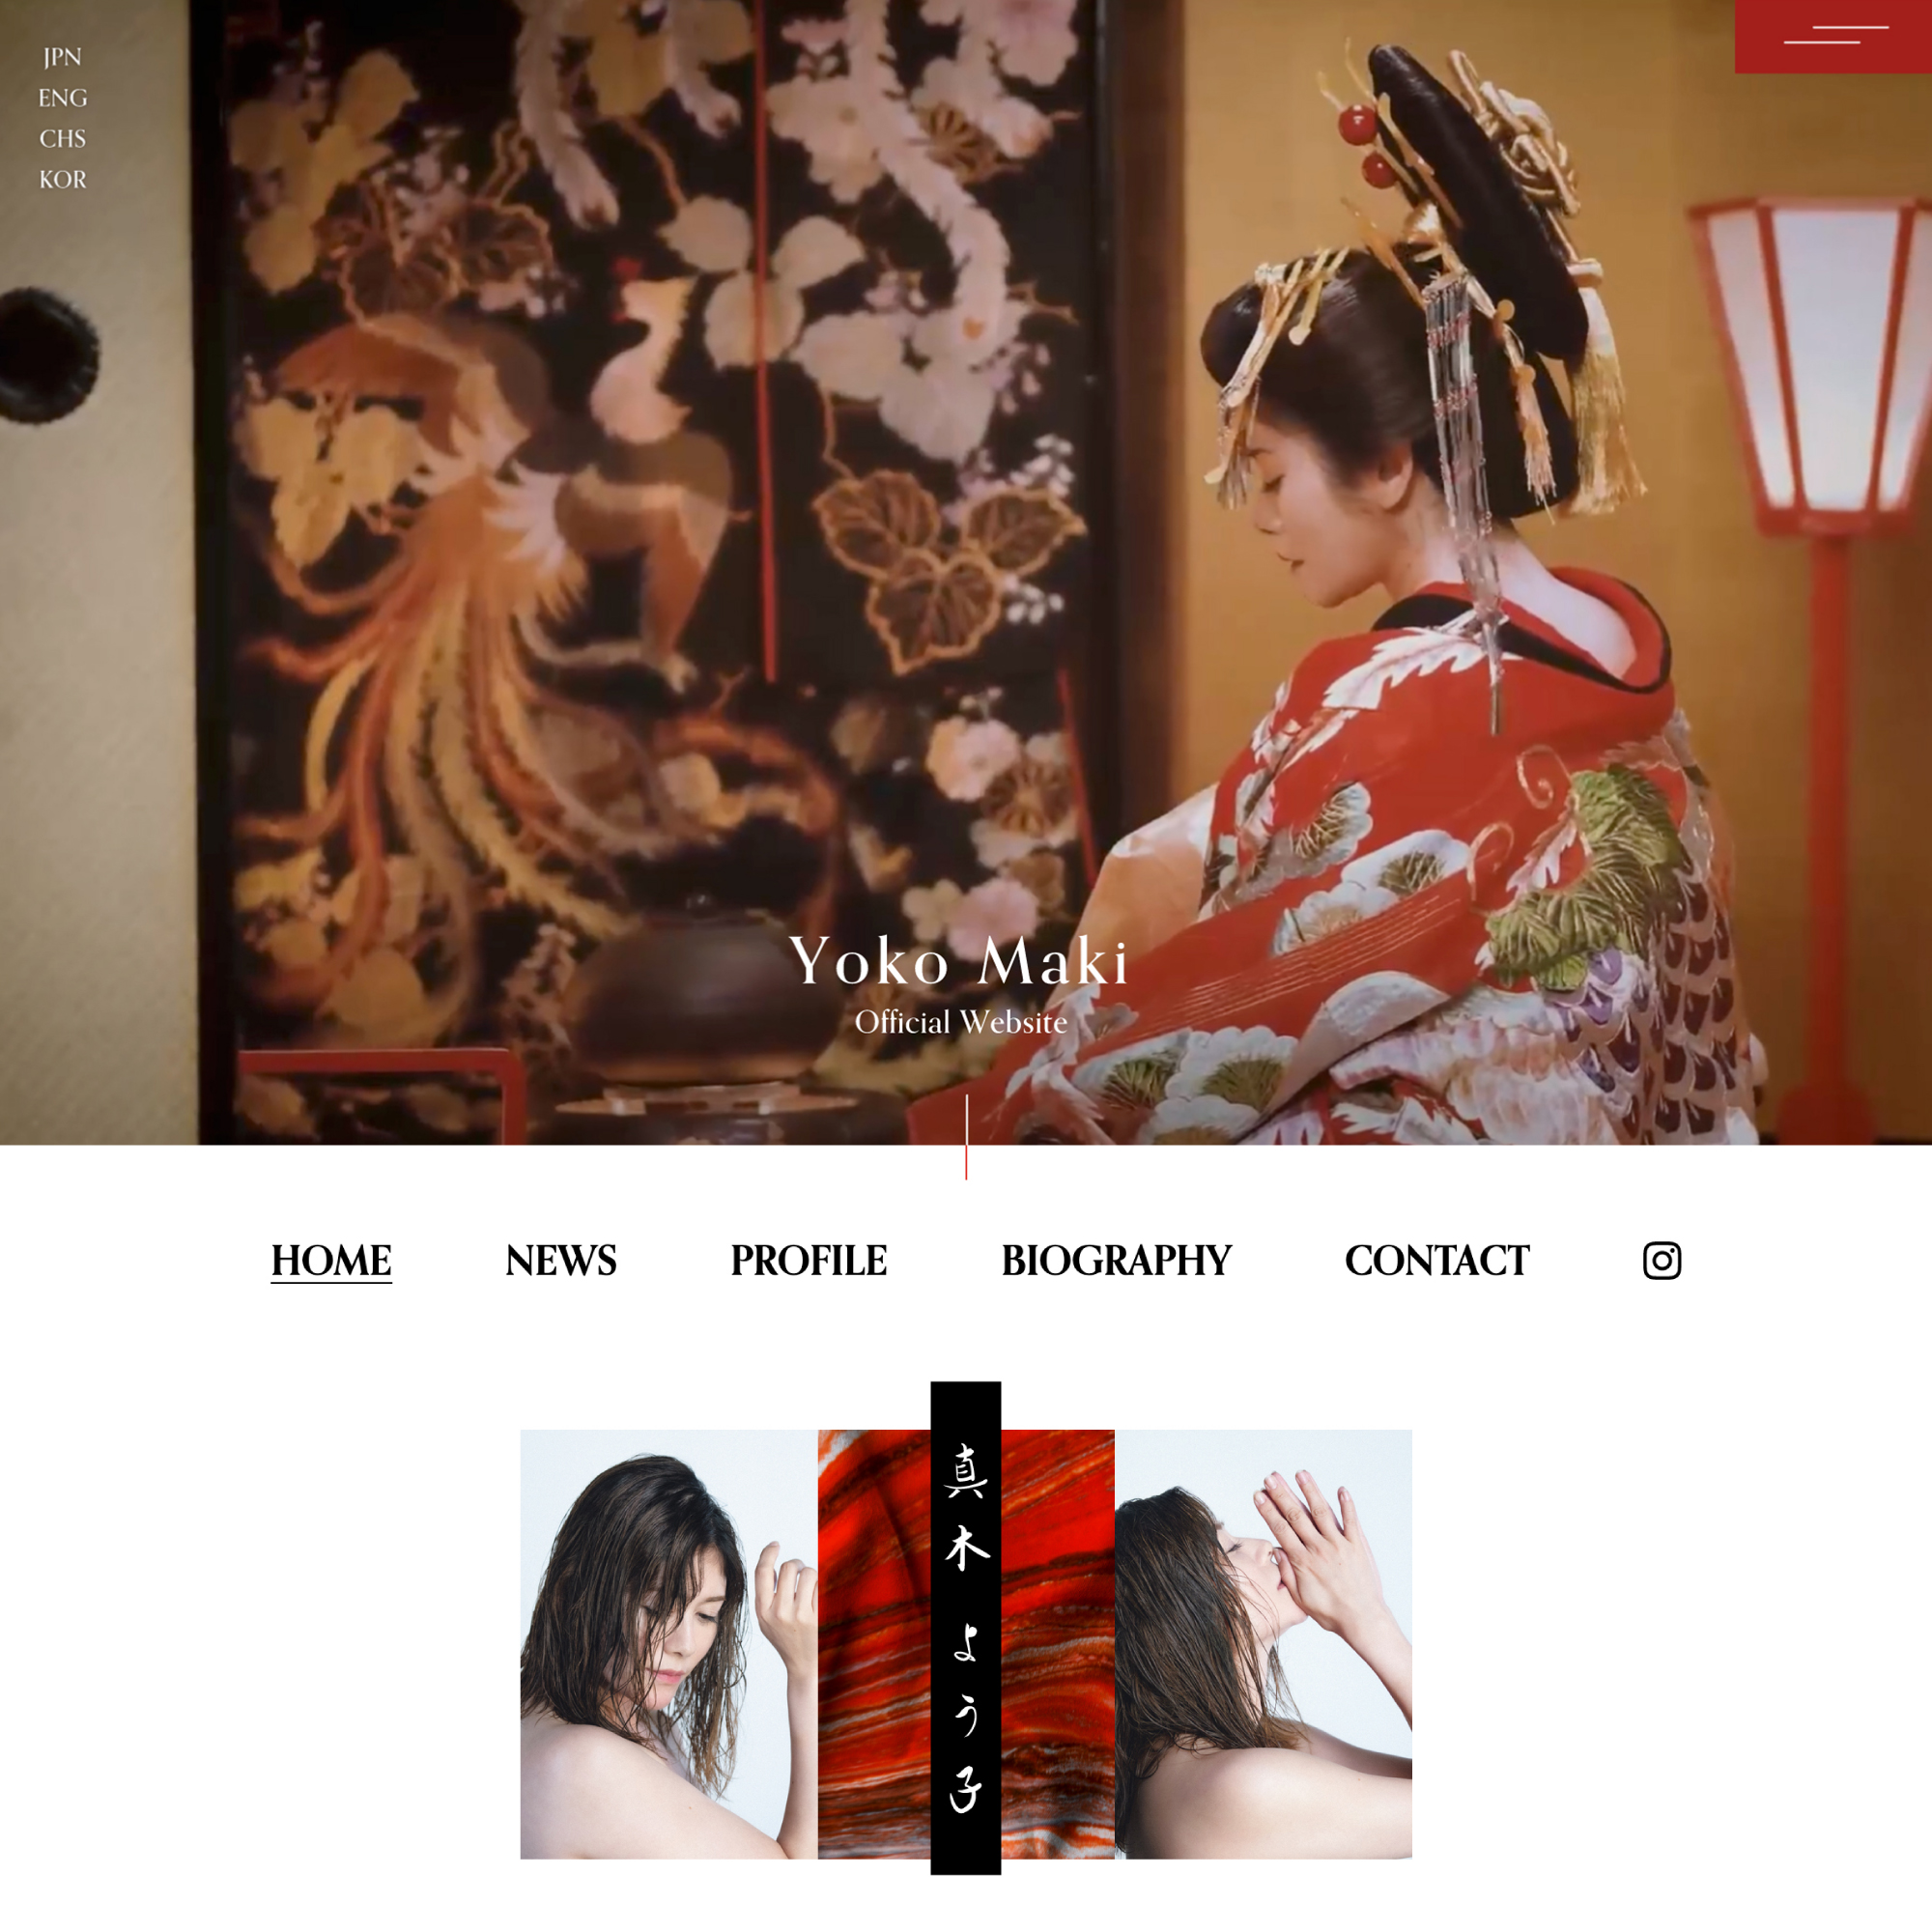 Yoko Maki website